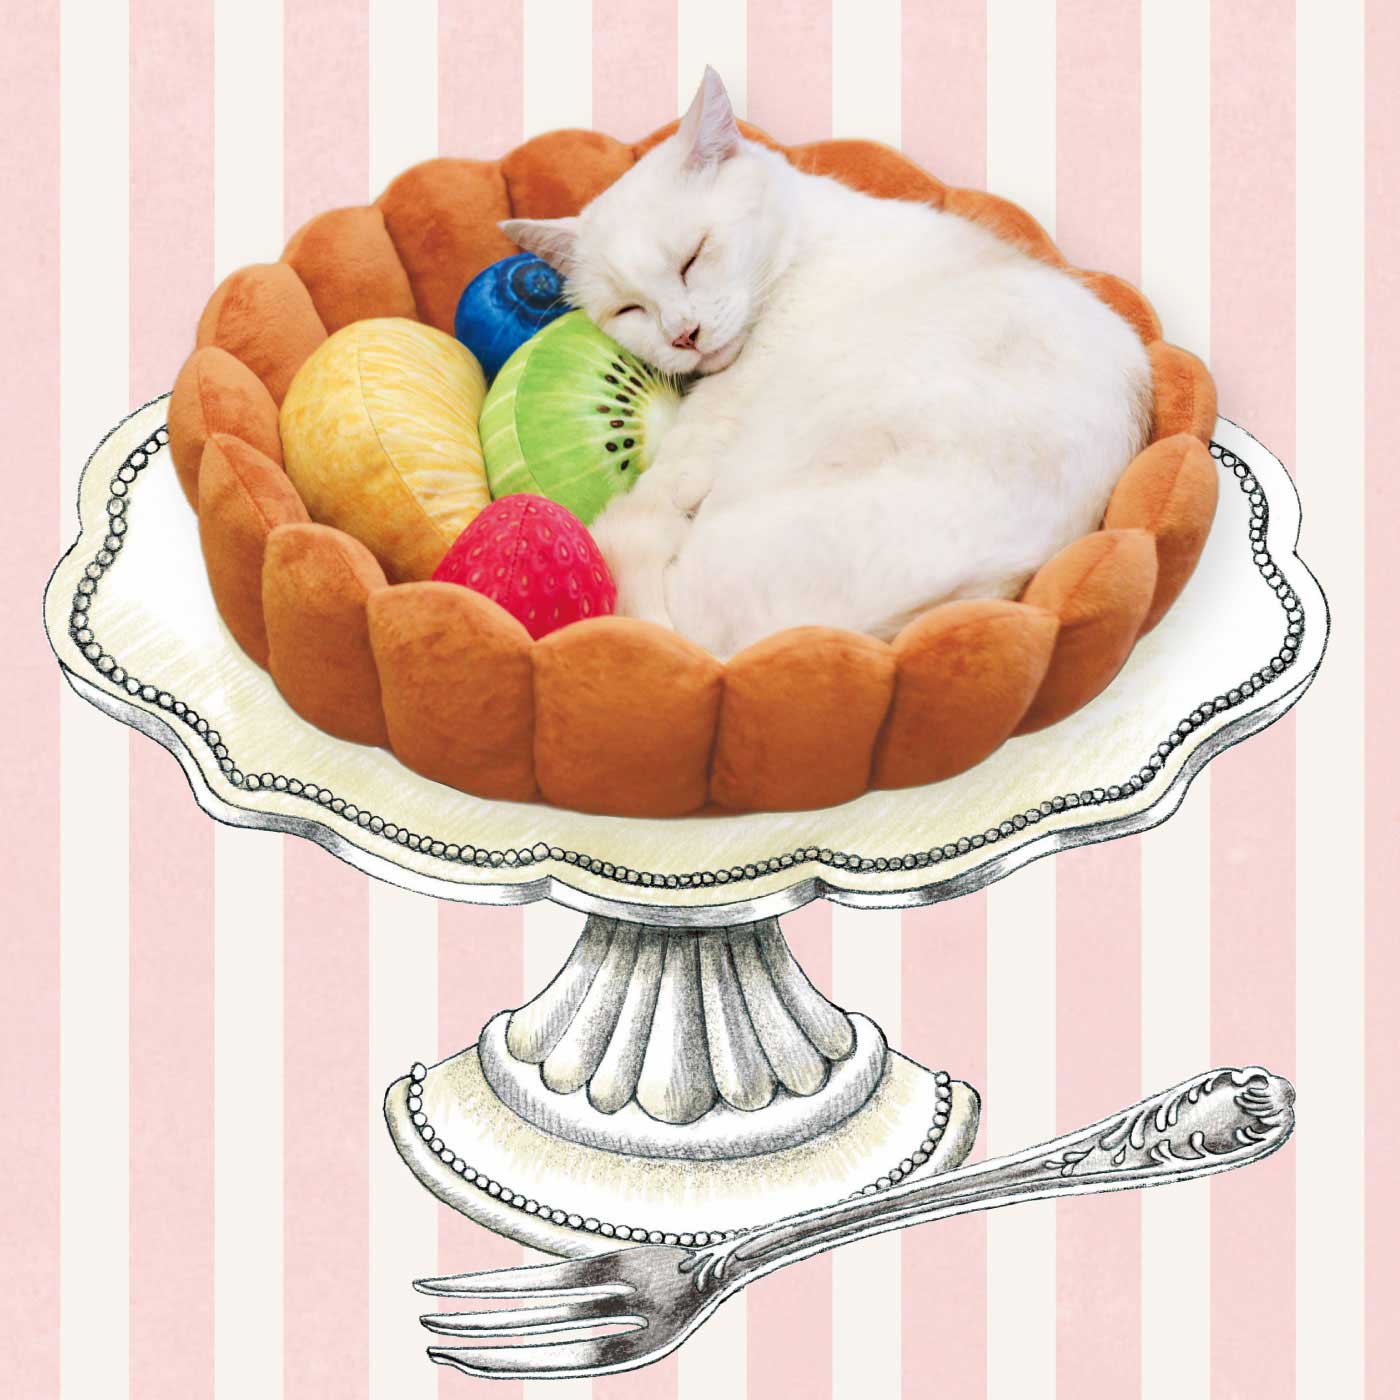 【預購】日本進口 Felissimo 貓部寵物水果塔床 - Cnjpkitchen ❤️ 🇯🇵日本廚具 家居生活雜貨店